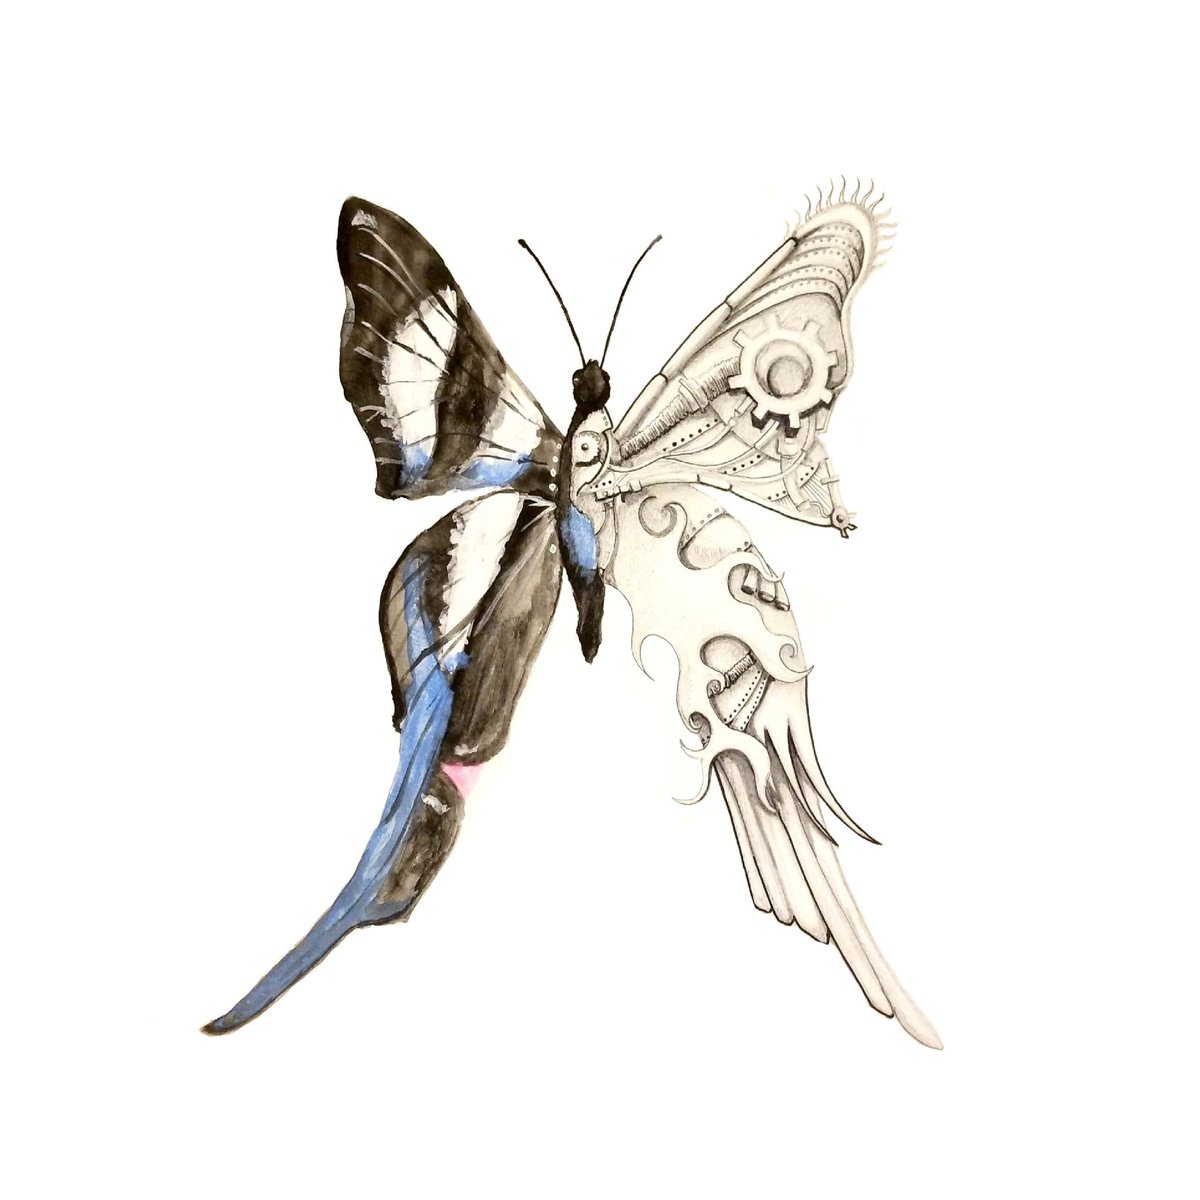 長澤翼 Tsubasa Nagasawa على تويتر 一文字脱線 近いうちに綺麗な自然もテクノロジーで代替されるのでしょう 面白すぎる 蝶 Art イラスト Design ボールペン 絵具